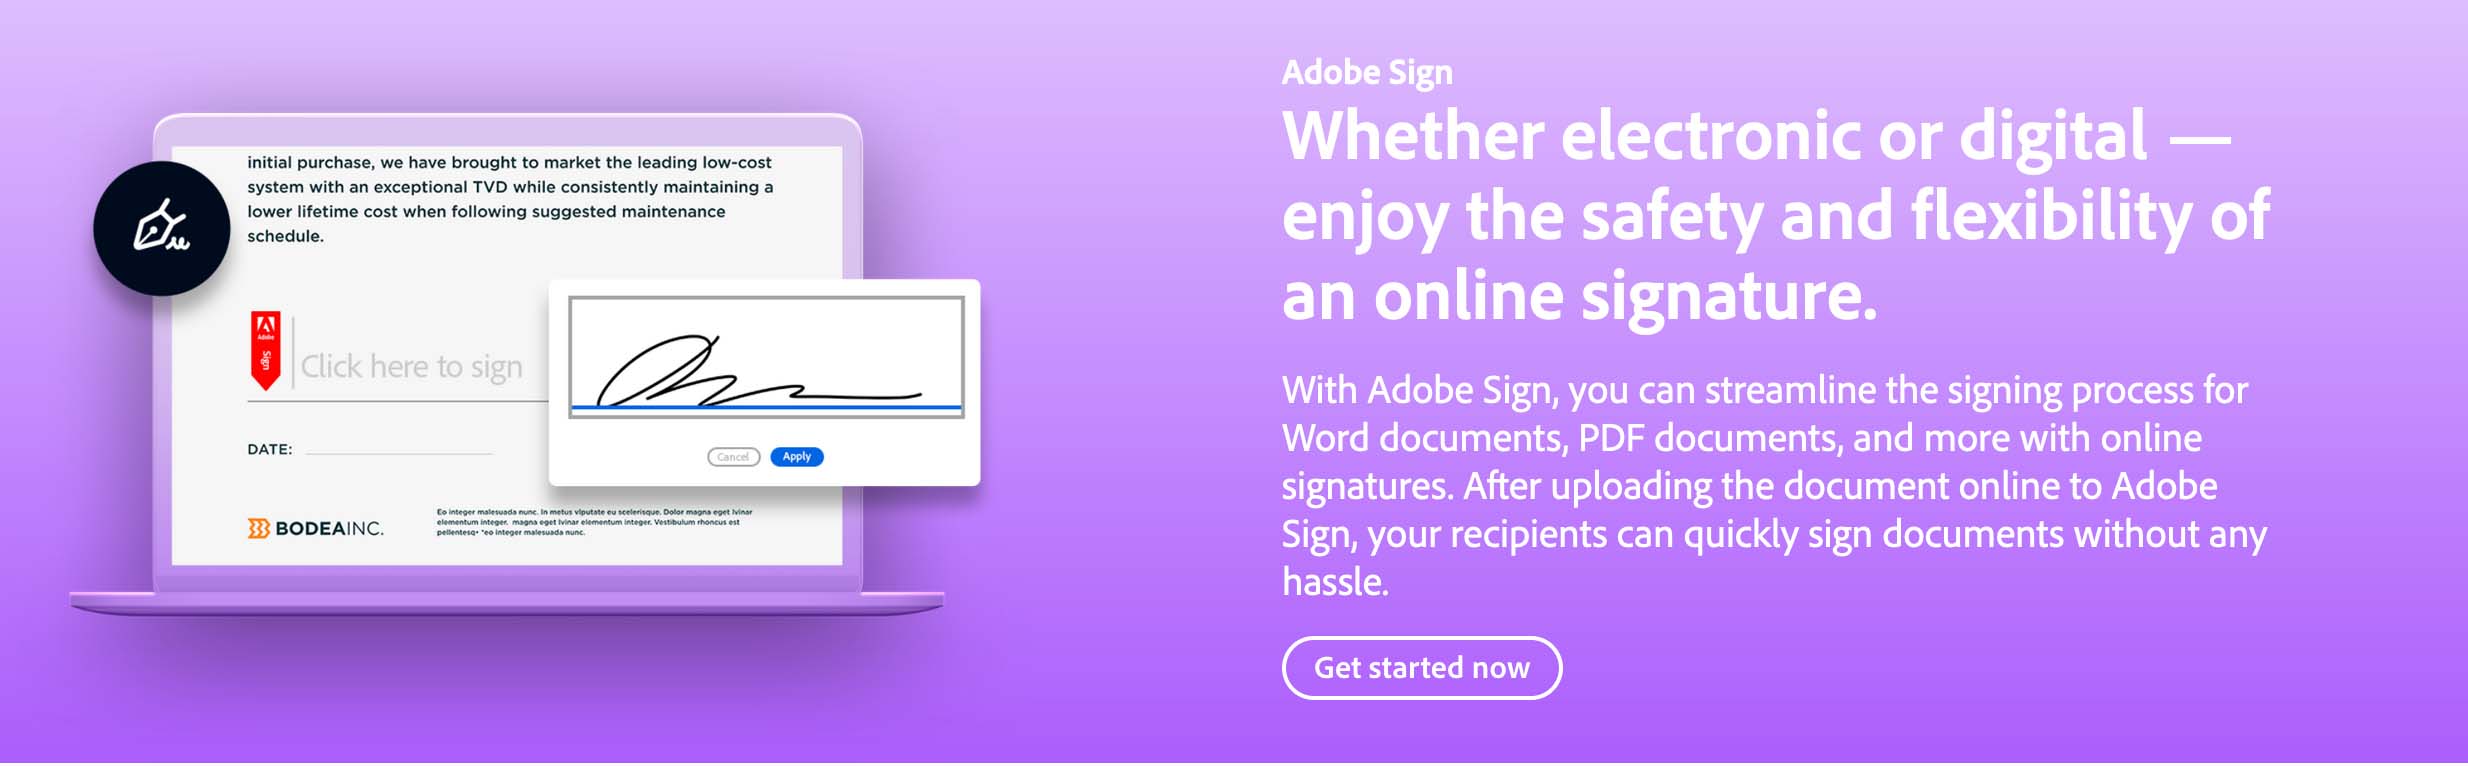 Adobe Sign ThinkEDU Corporate WebSite